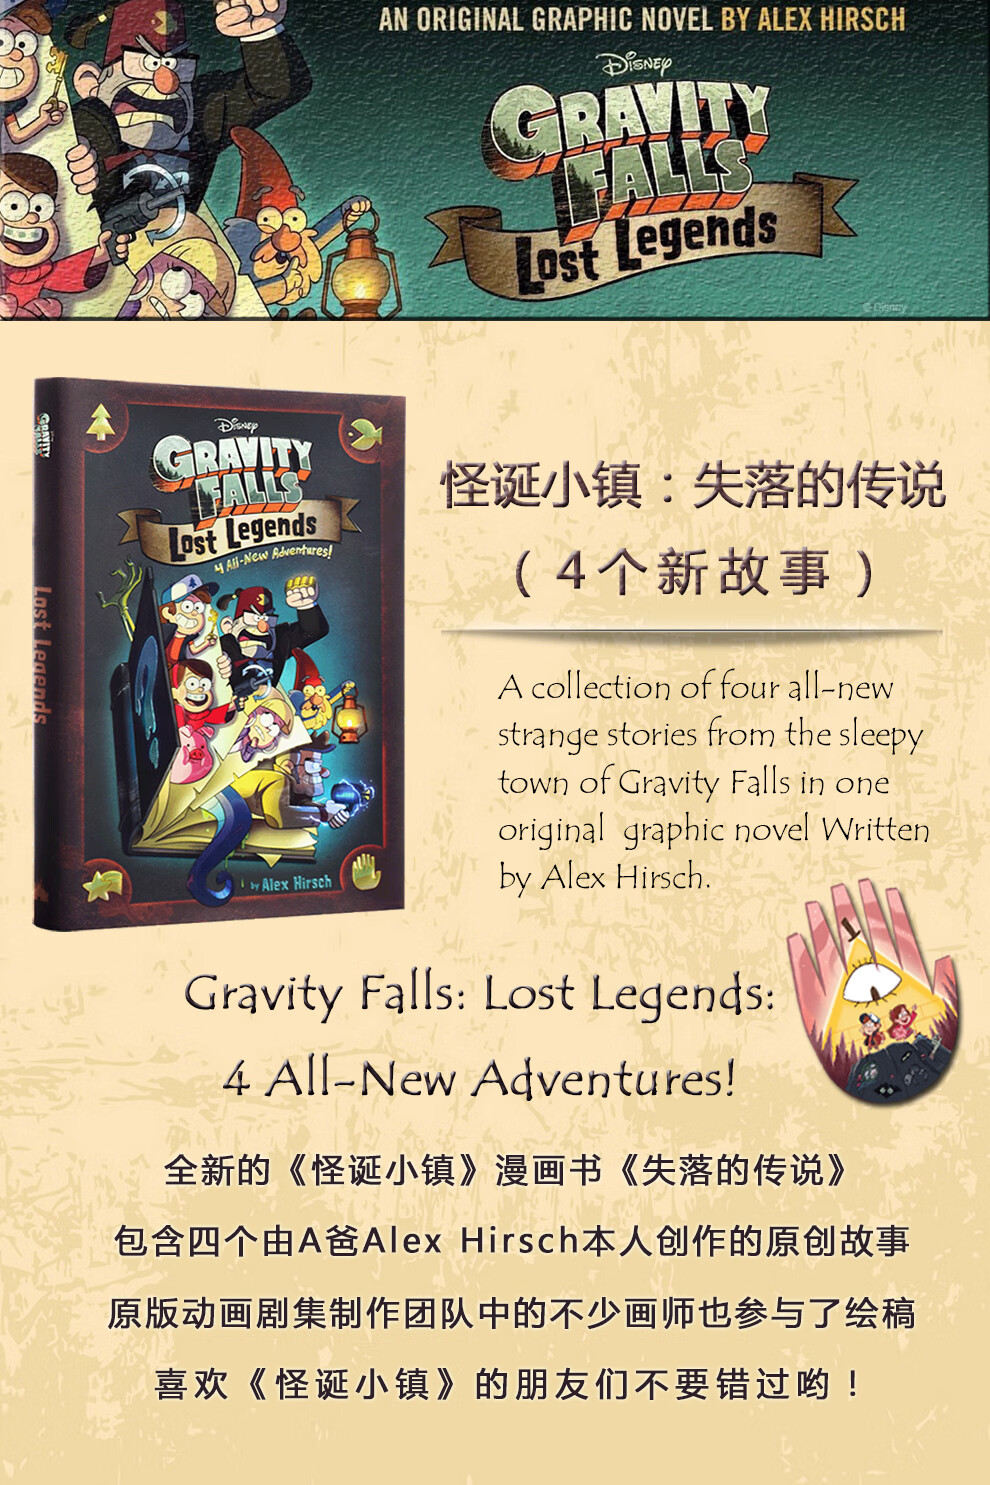 怪诞小镇:失落的传说 (4个新故事)英文原版gravity falls:lost